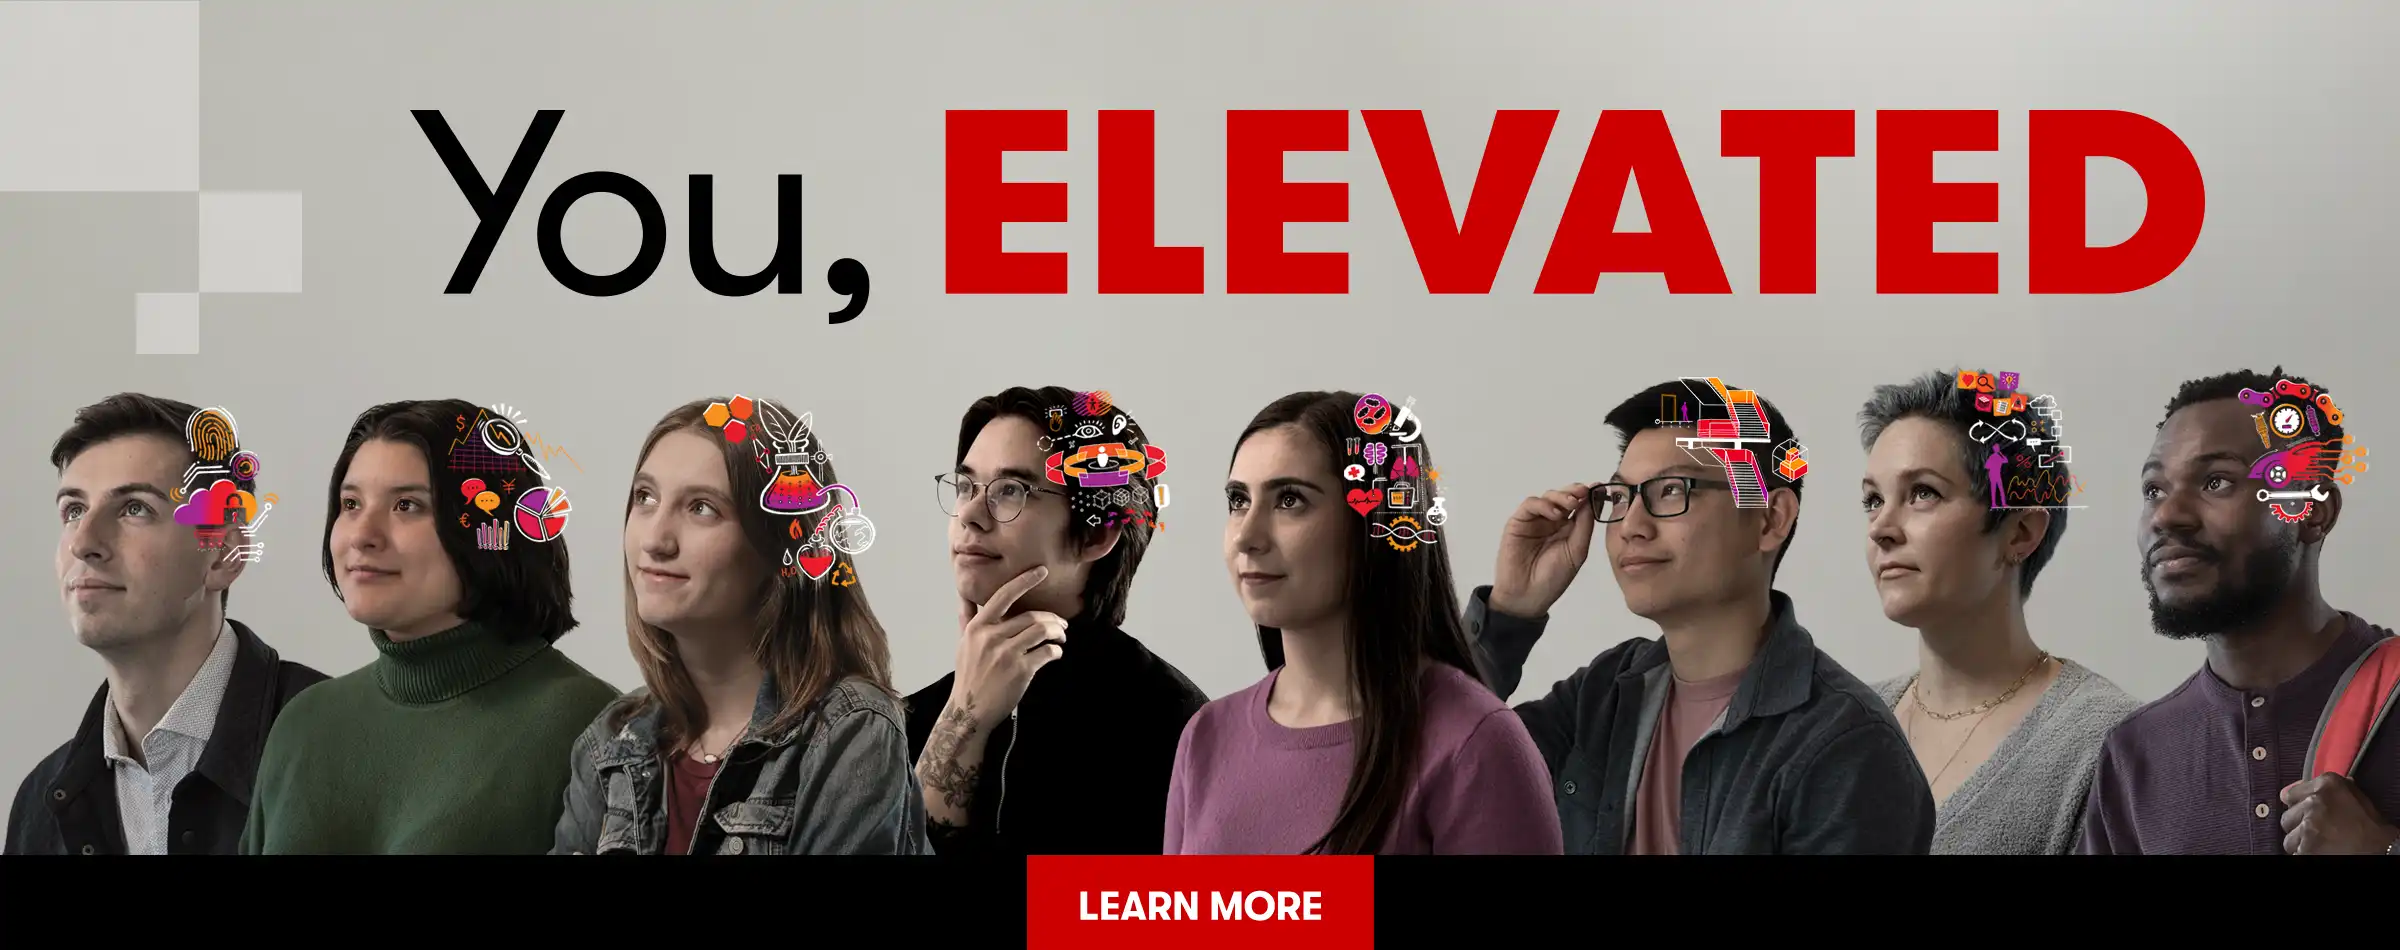 你, Elevated | Eight students in a 3/4 view looking up and to the left with line art illustrations overlaid on their heads | 了解更多